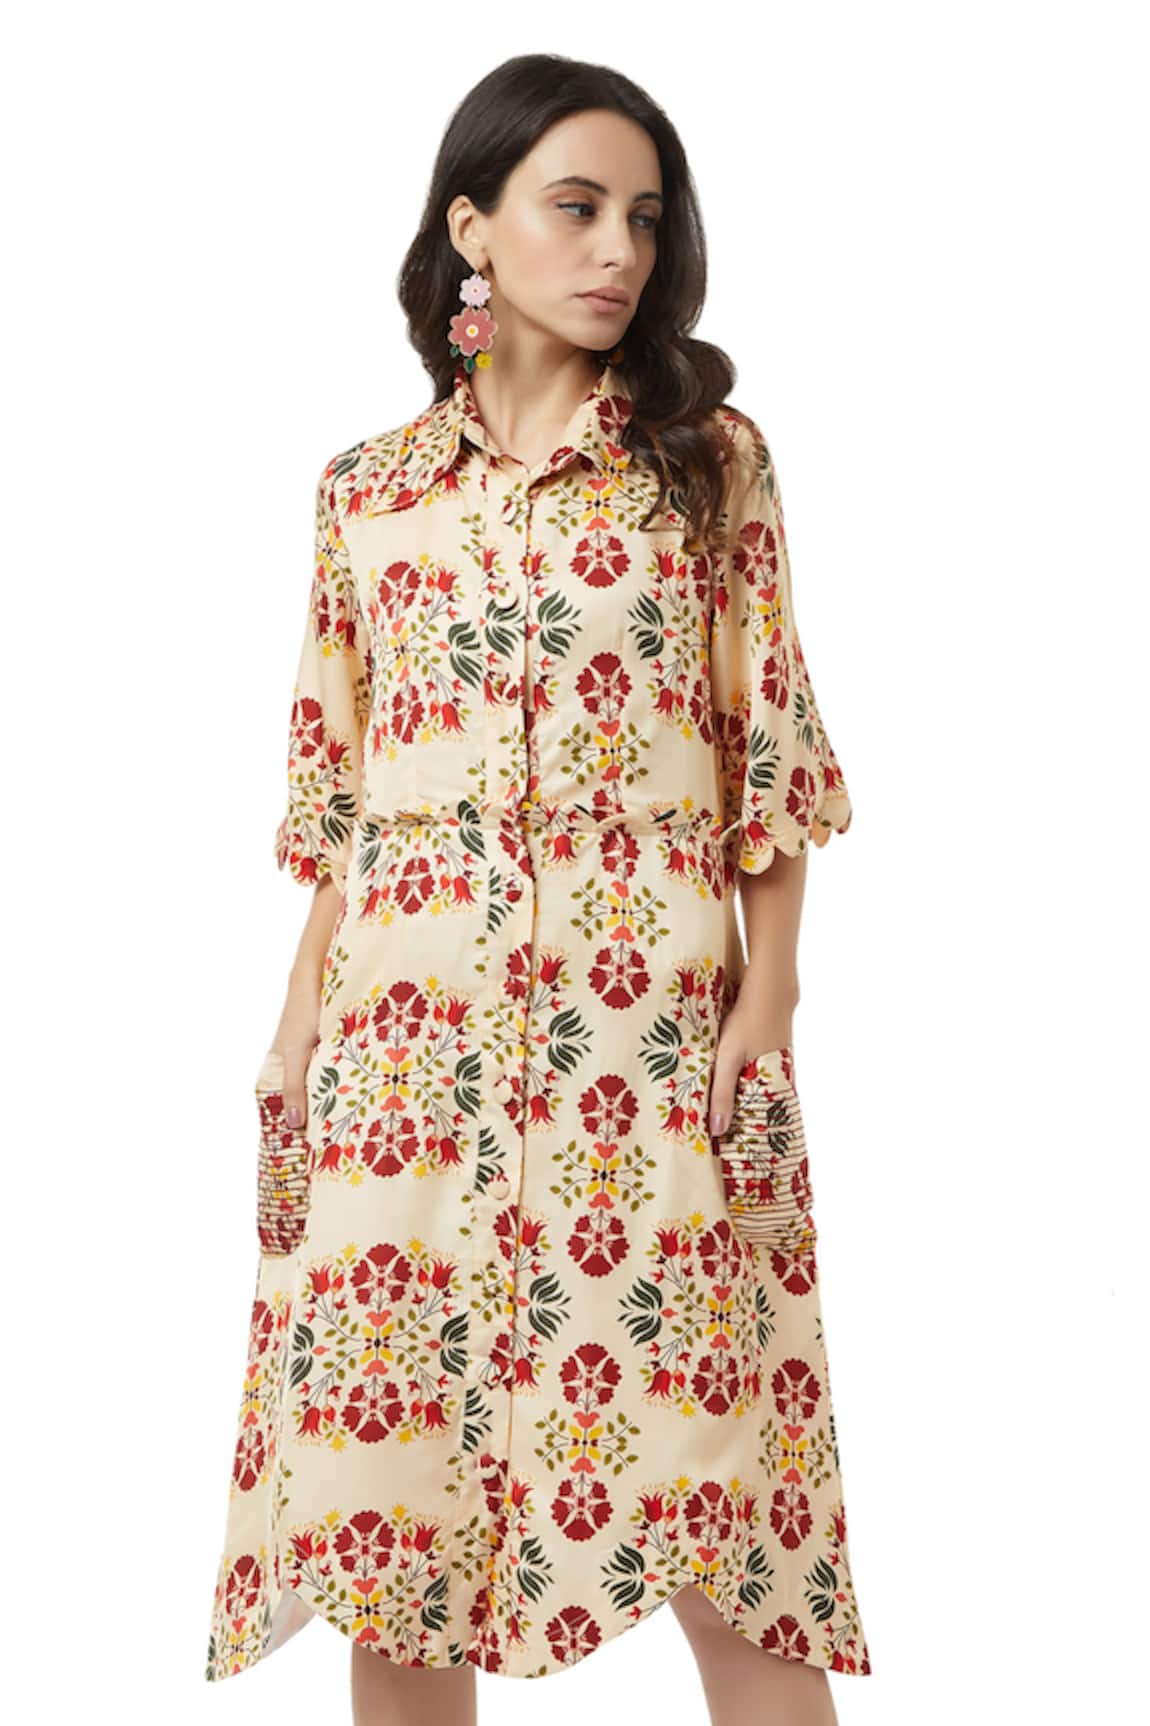 Ankita Annie Floral Print Shirt Dress